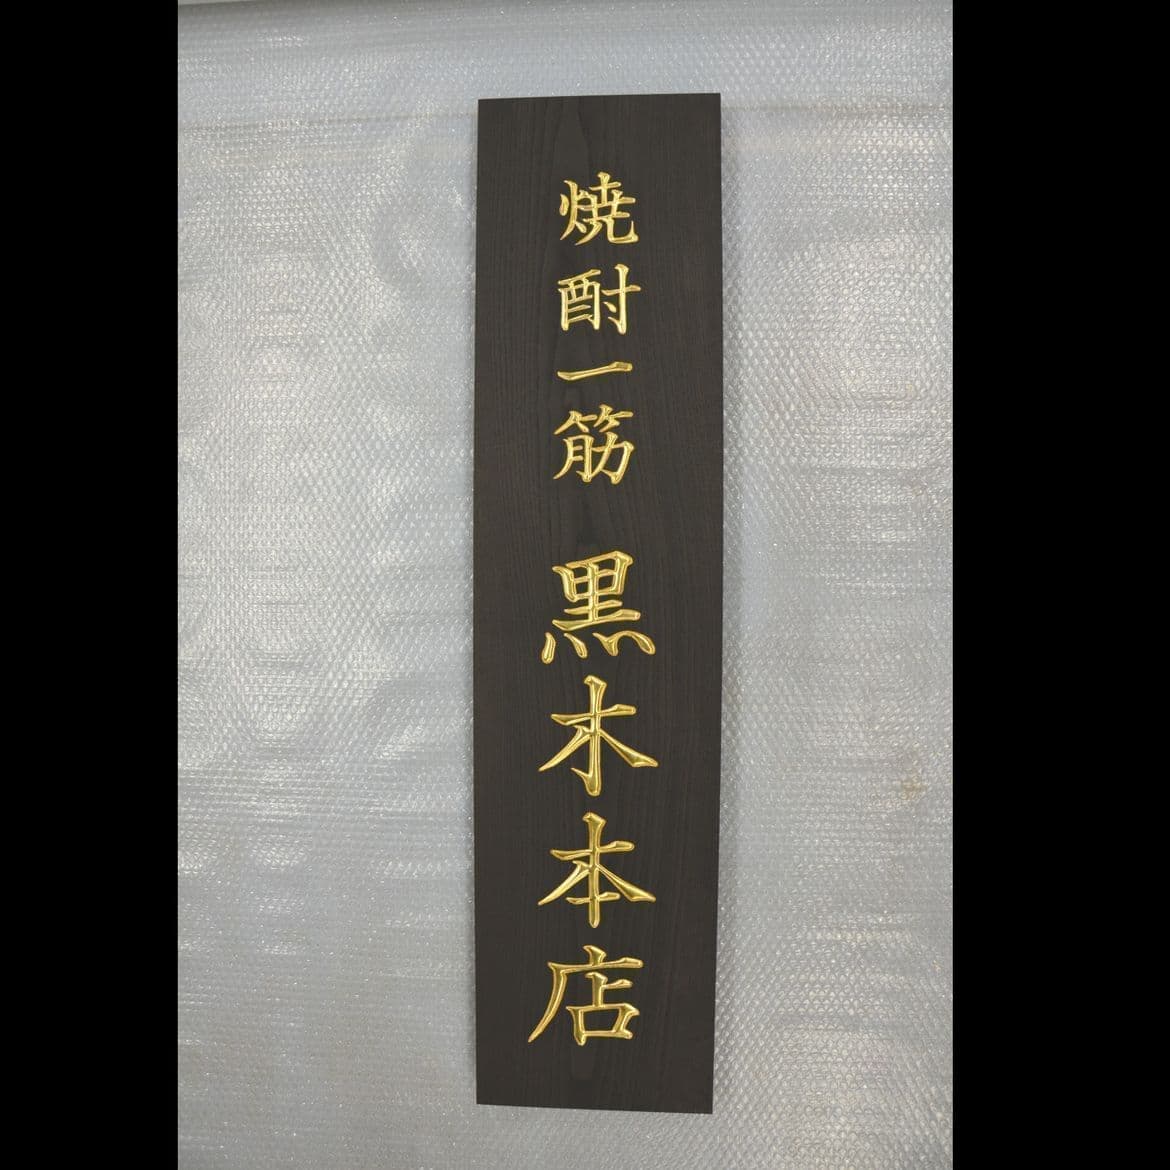 黒い木の板に金文字で社名が彫刻されている表札、看板